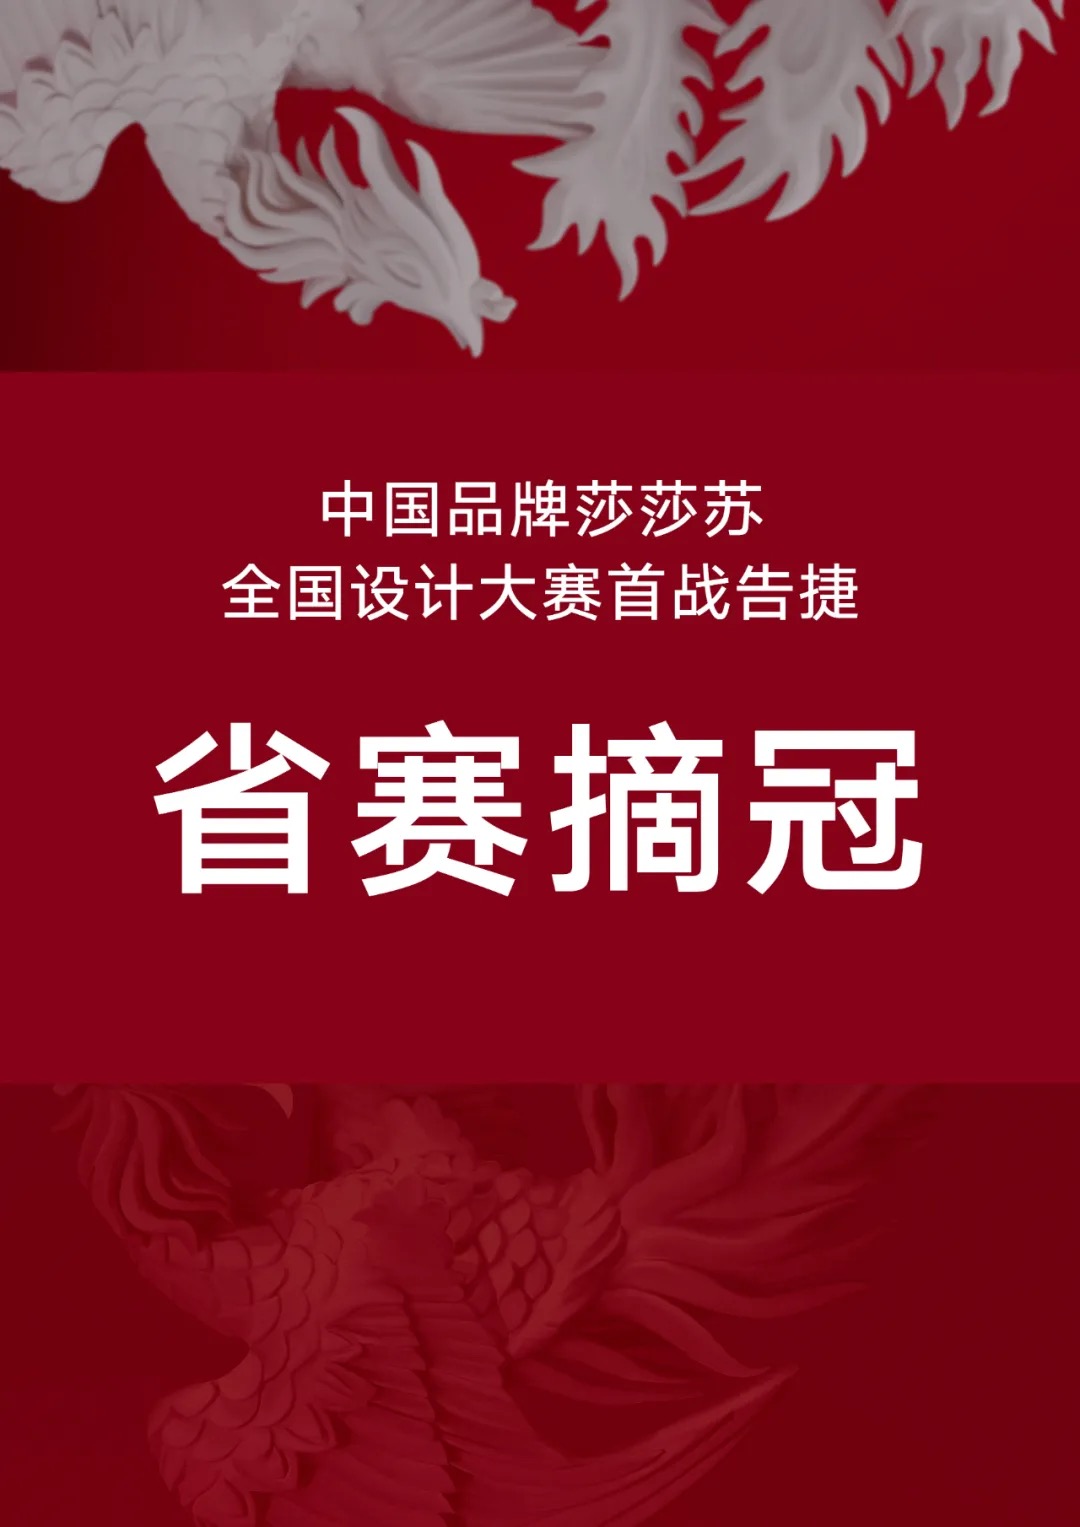 中国品牌莎莎苏，全国设计大赛首战告捷